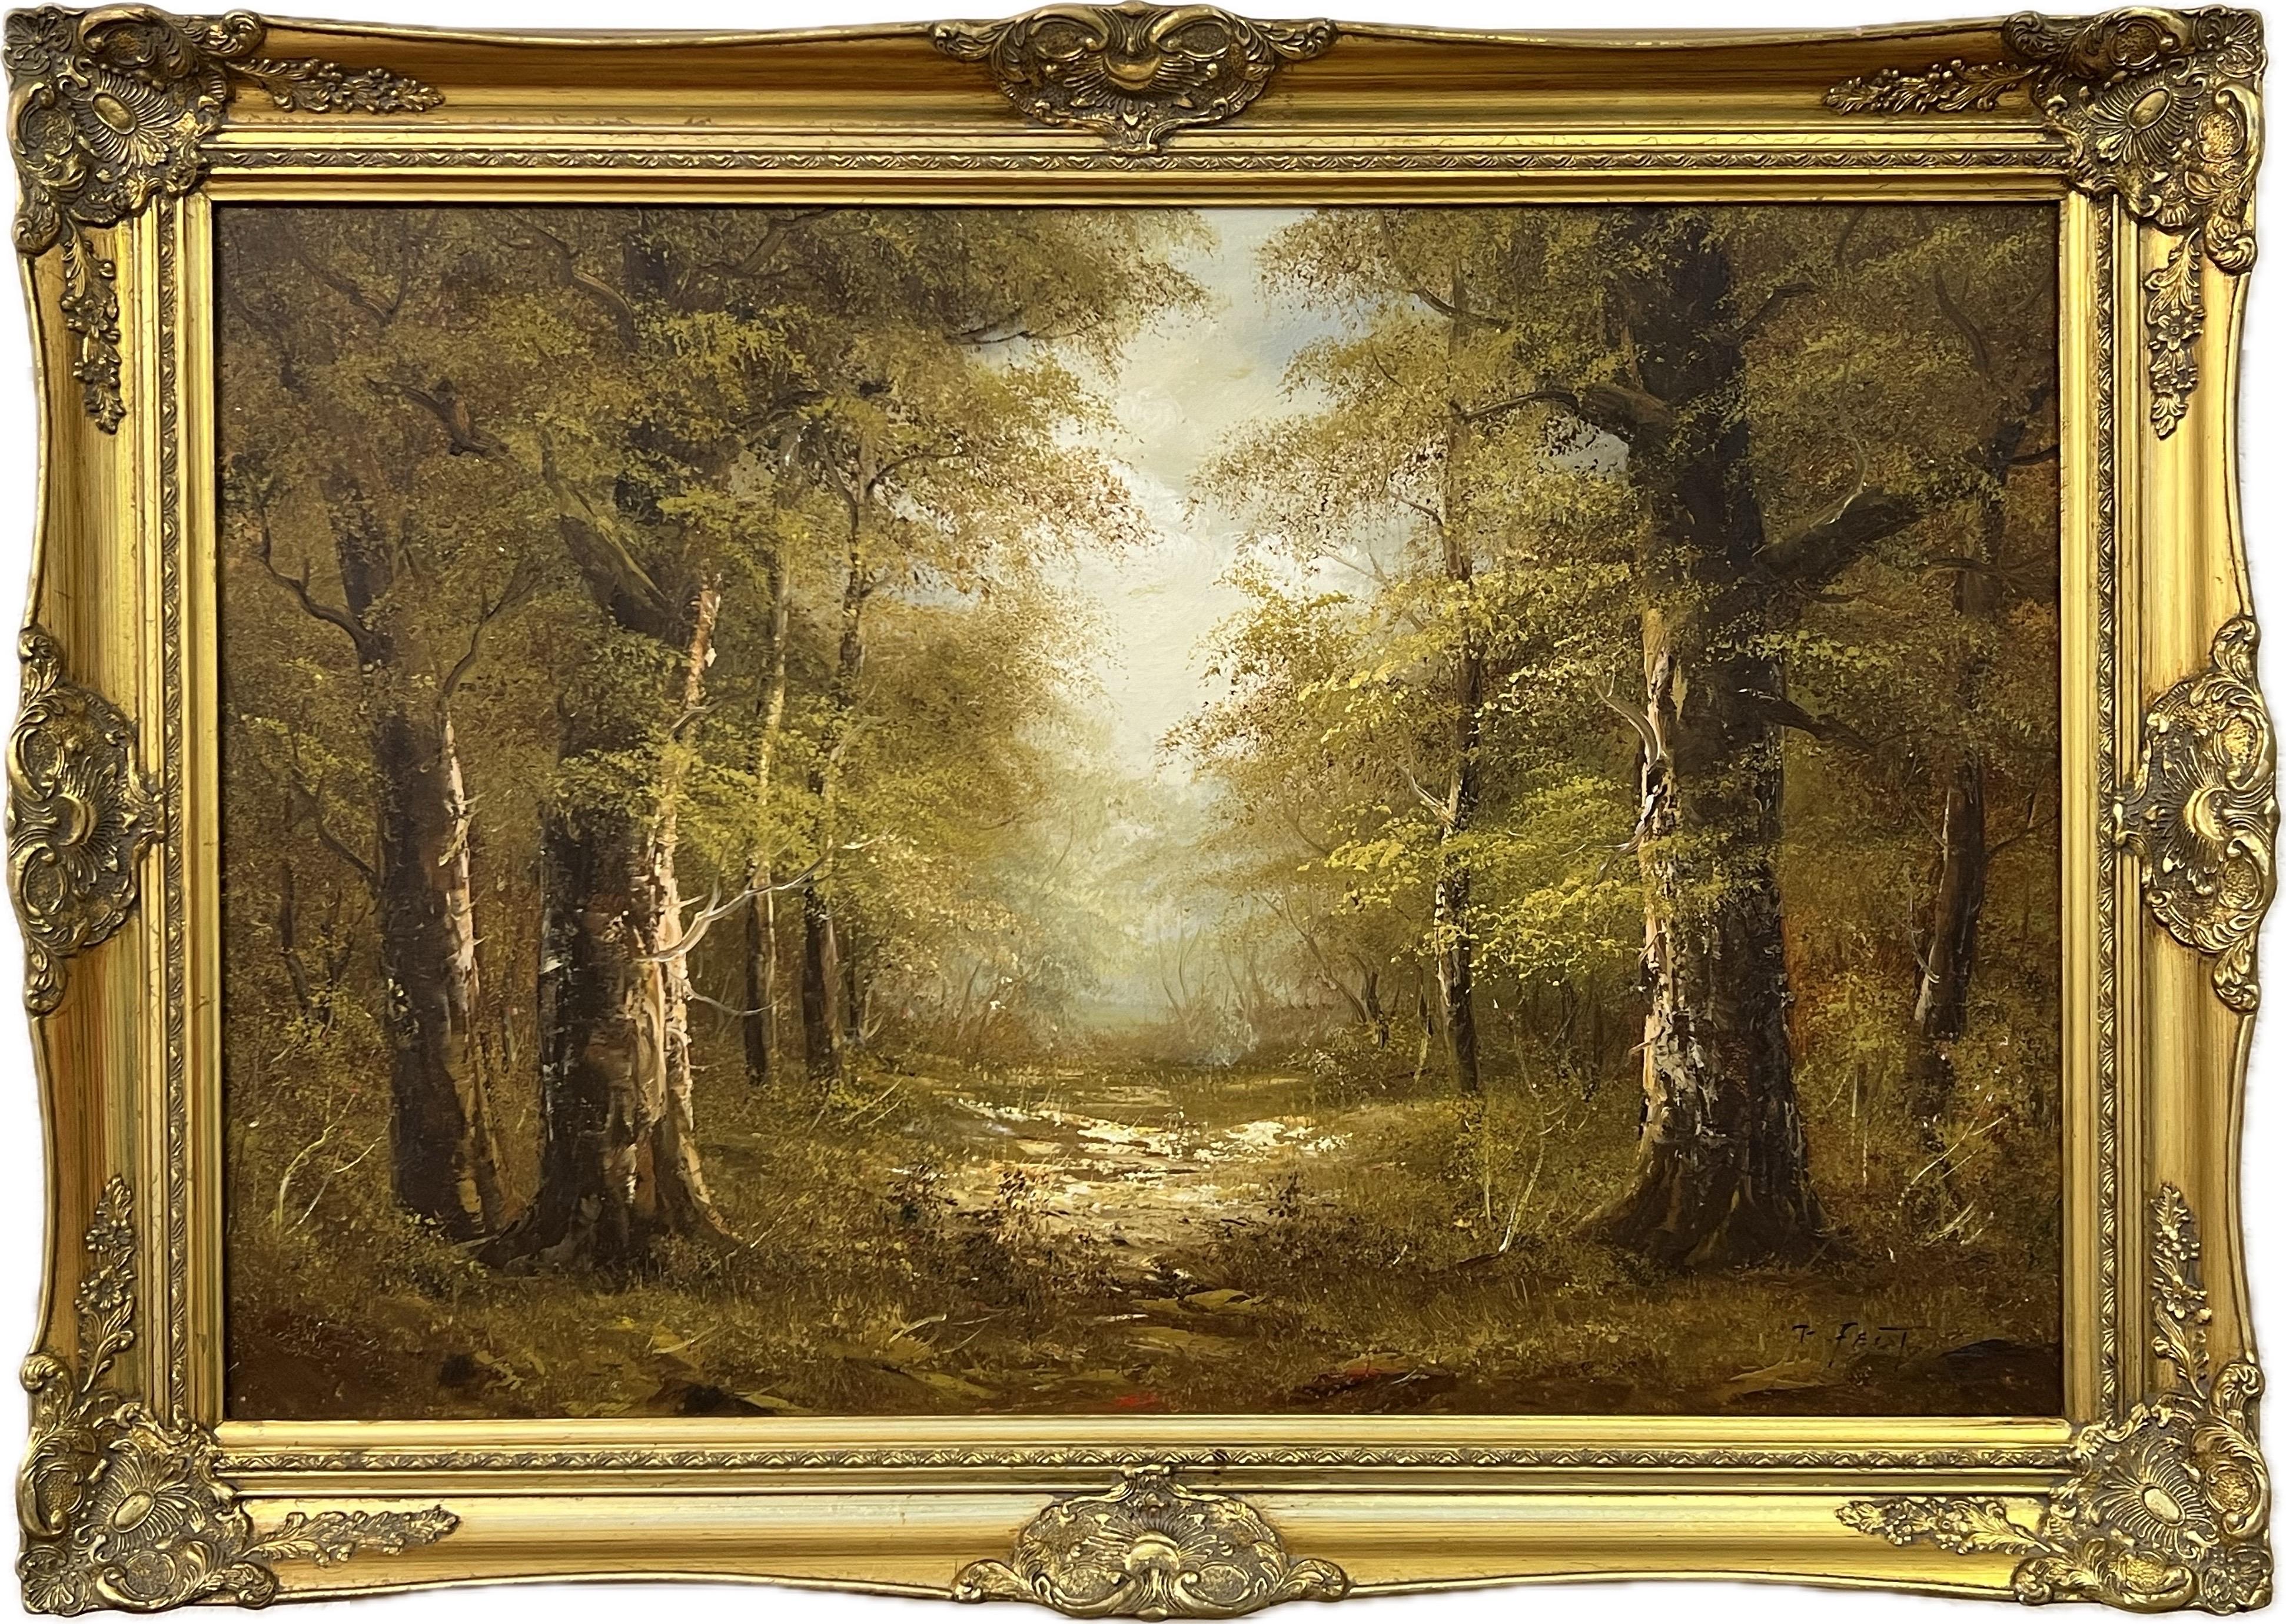 Atmosphärisches impressionistisches Gemälde eines dichten Waldes in europäischem Wald – Mixed Media Art von T Feist